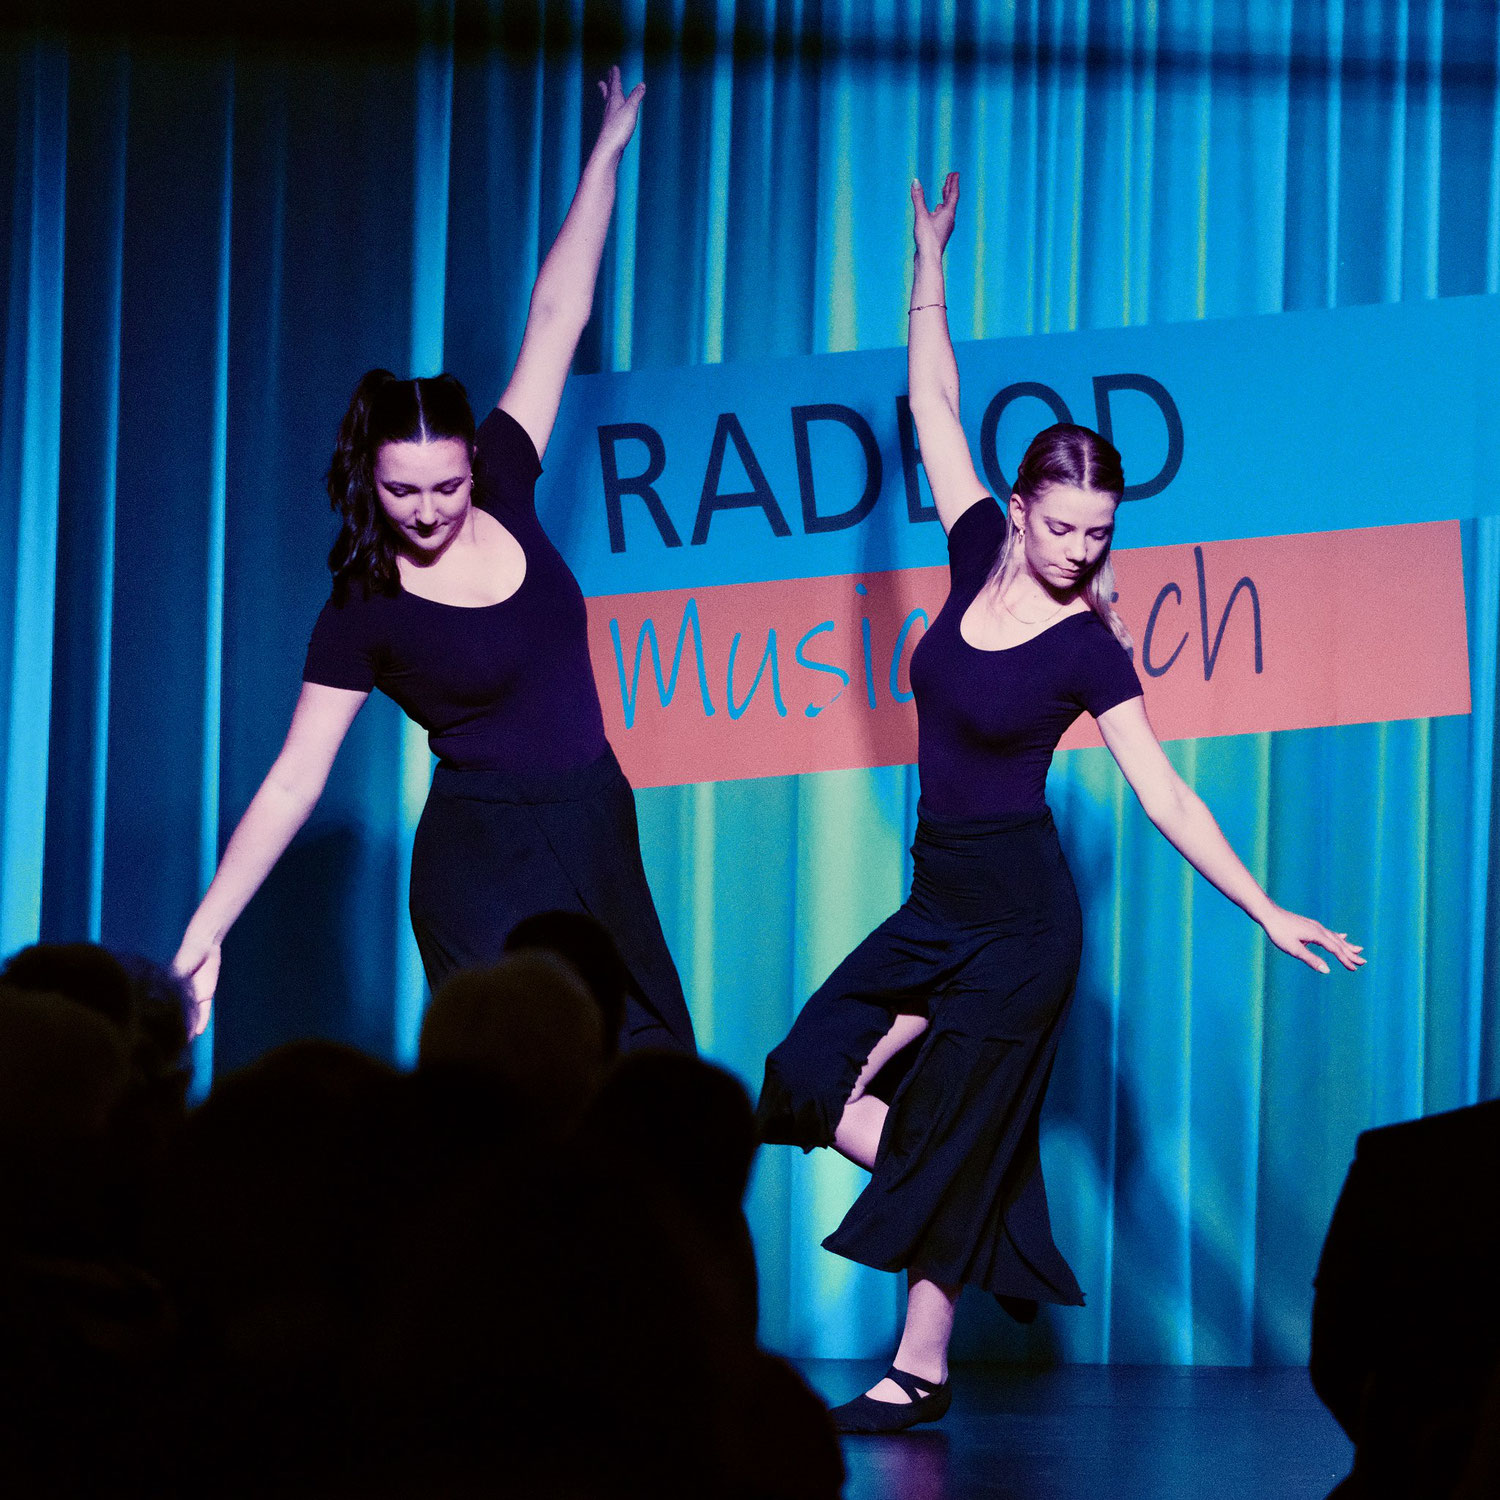 Radbod Musicalisch | Tanz & Gesang im Kulturrevier